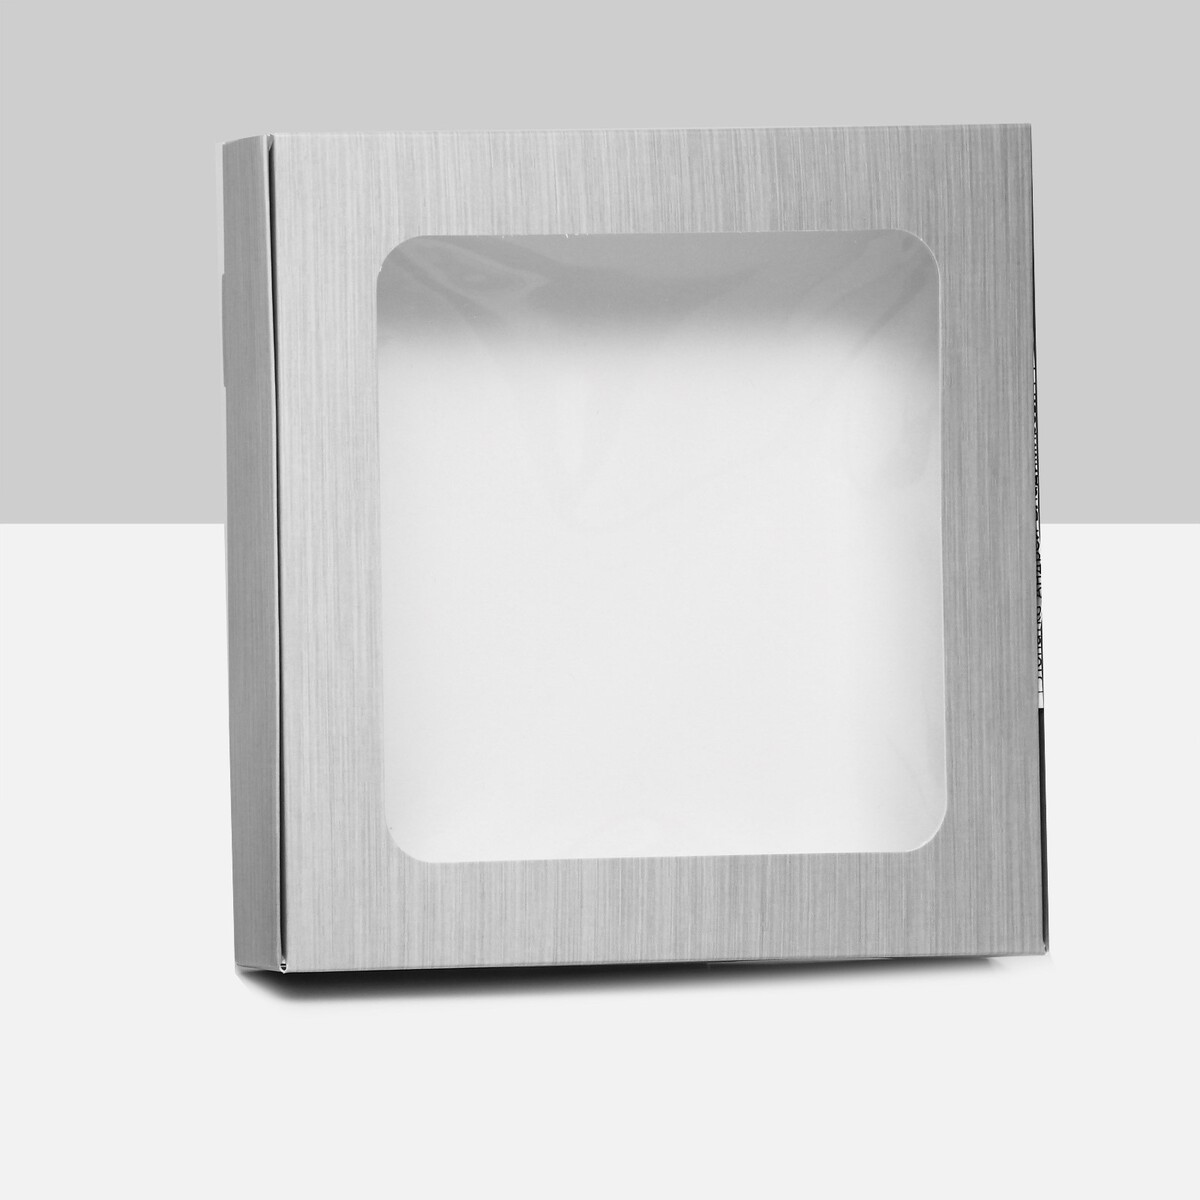 Коробка самосборная, с окном, серебрянная, 16 х 16 х 3 см коробка самосборная с окном сиреневый 19 х 19 х 3 см